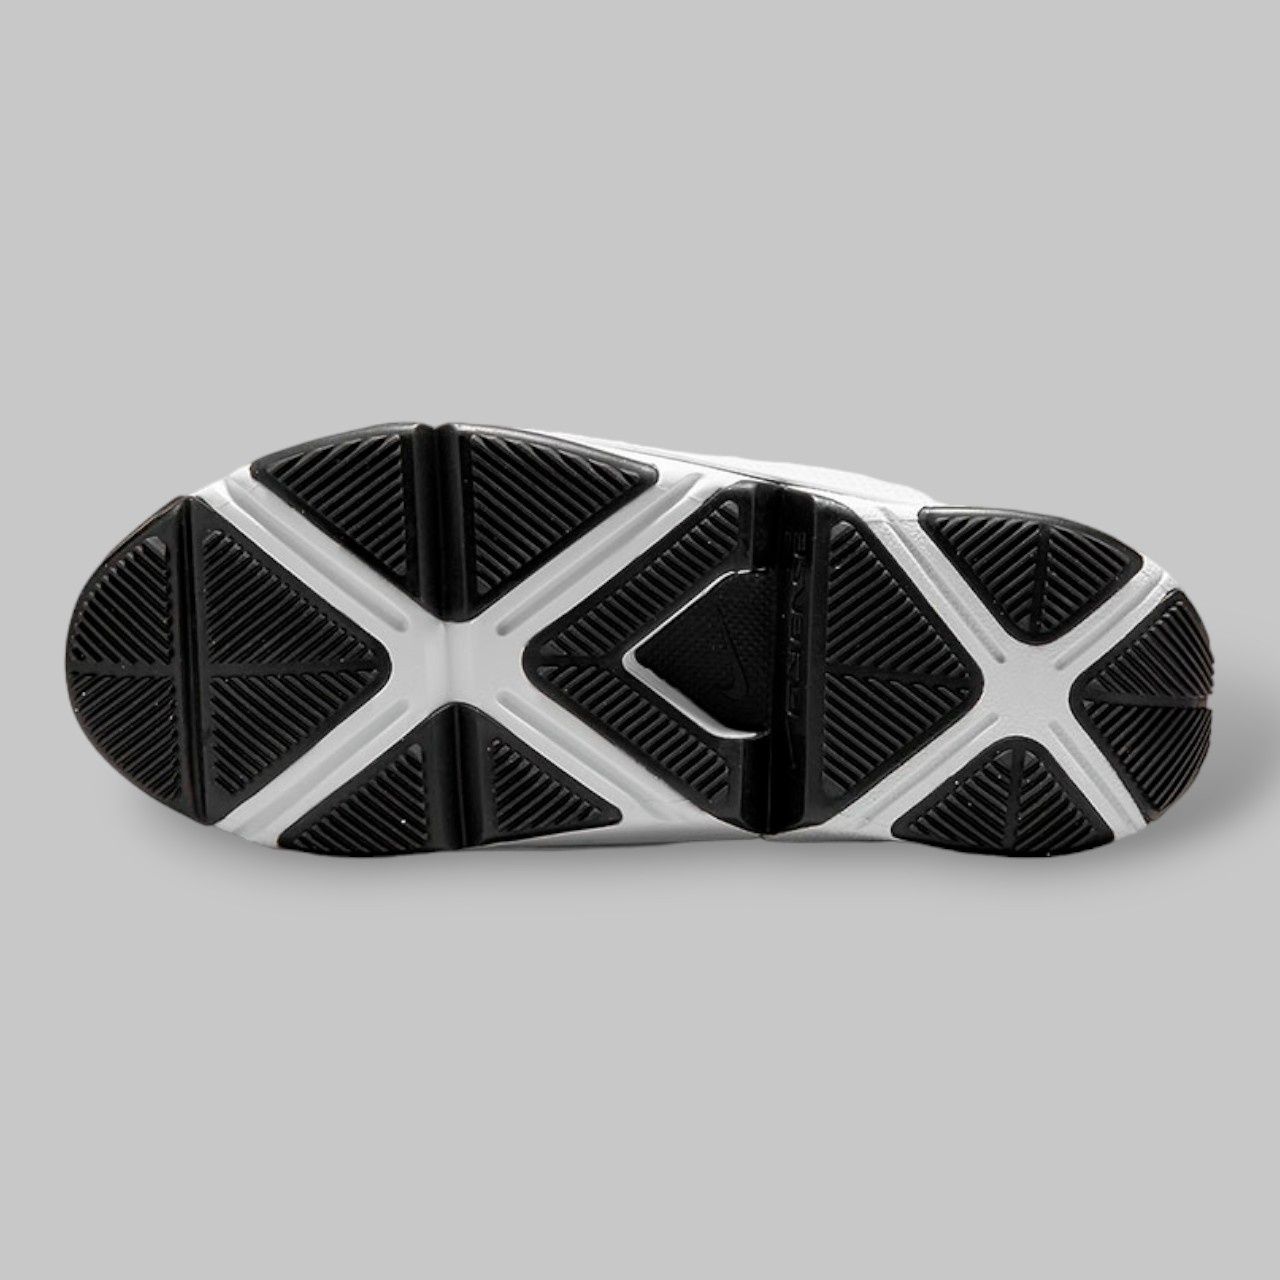 Оригінал кросівки Nike GO FLYEASE black white (DR5540 002) 50 розмір